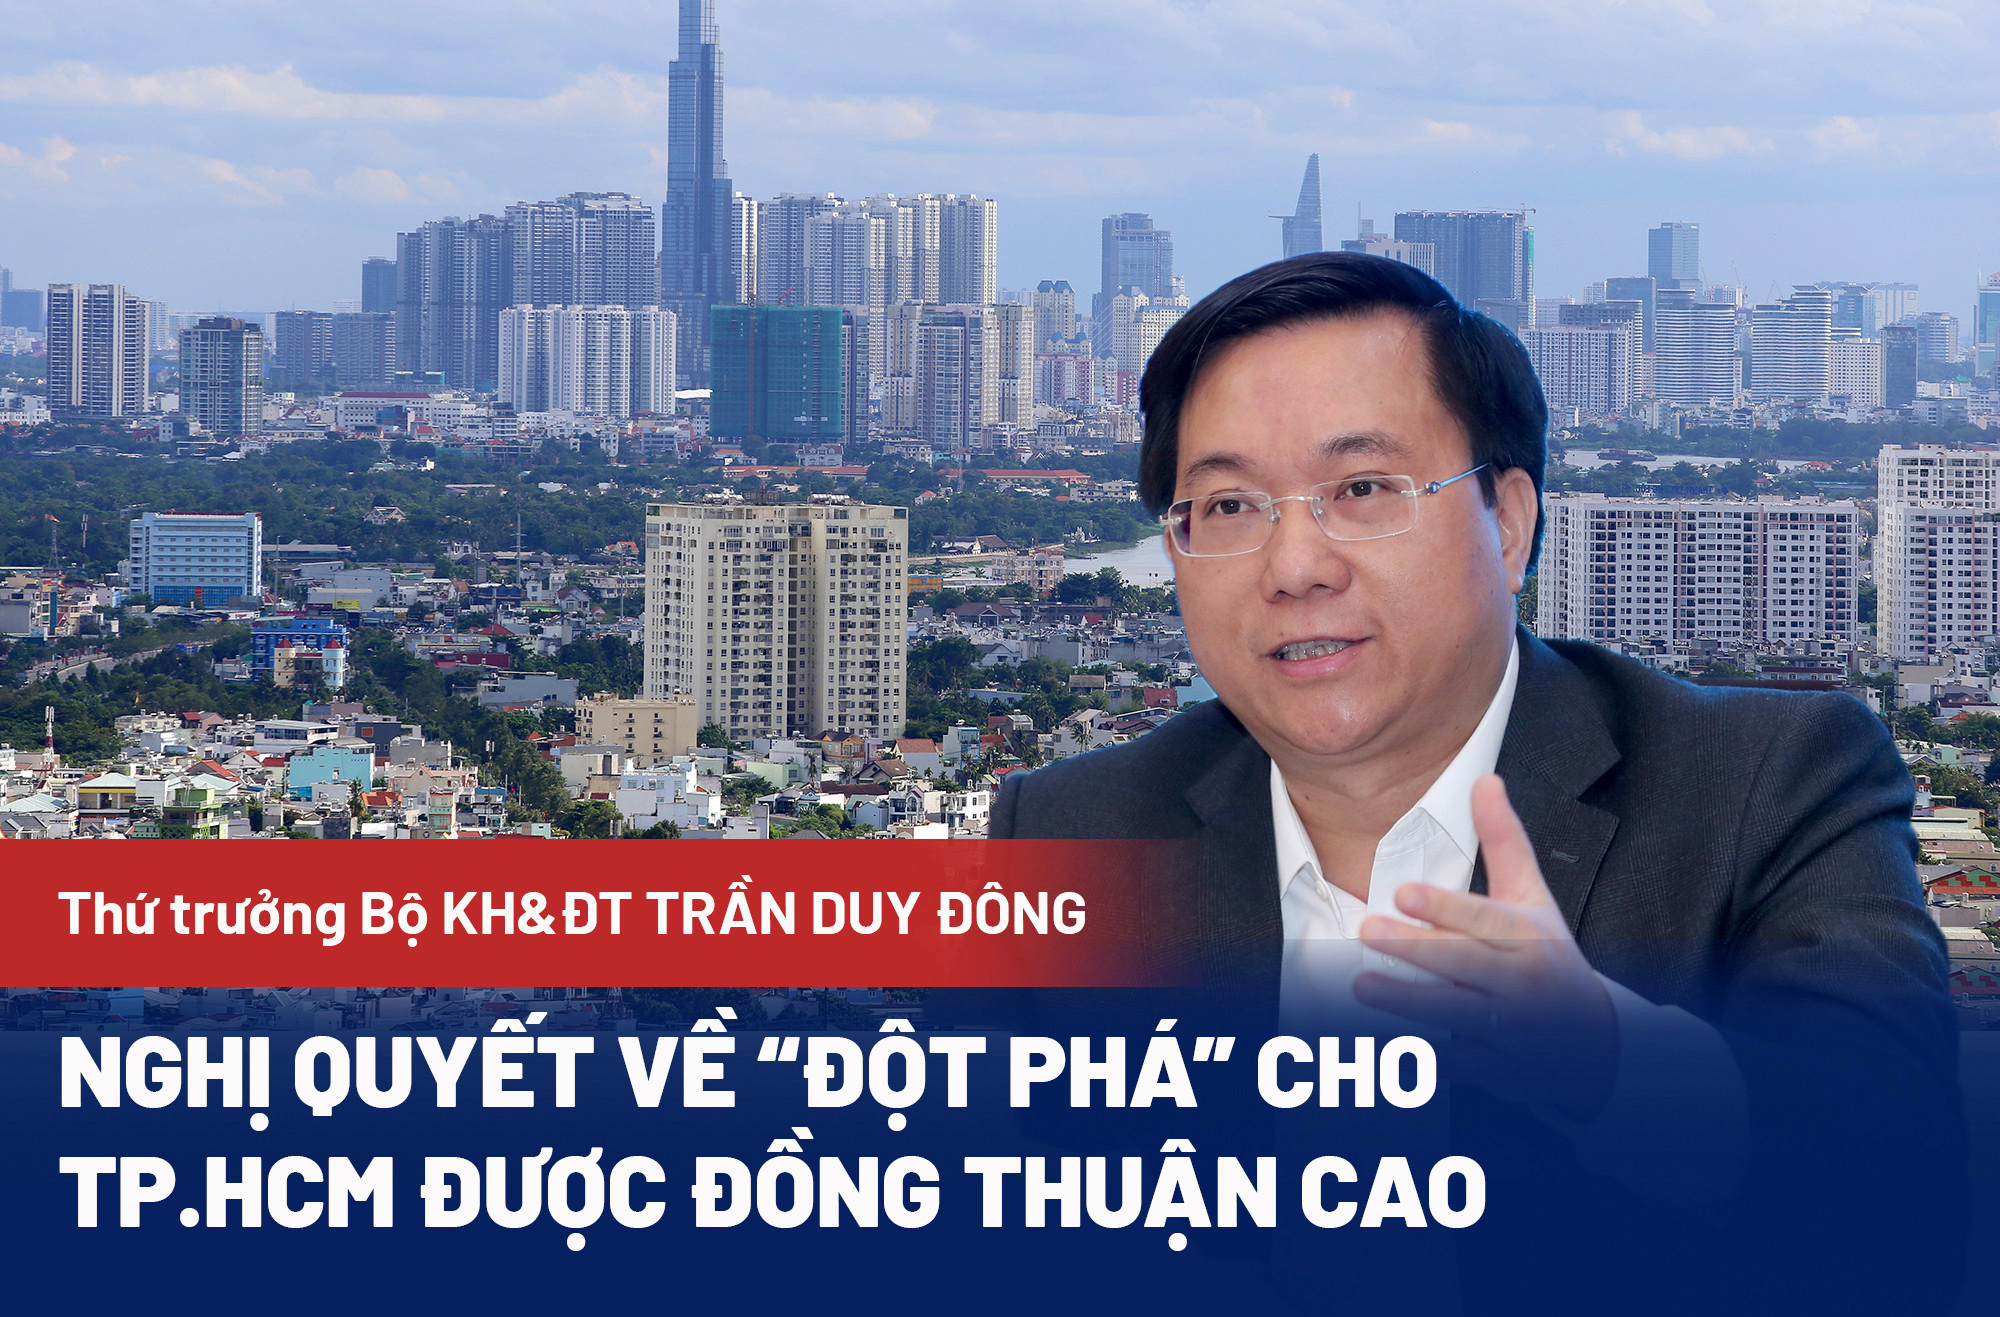 Thứ trưởng Bộ KH&ĐT Trần Duy Đông: Nghị quyết về 'đột phá' cho TP.HCM được đồng thuận cao